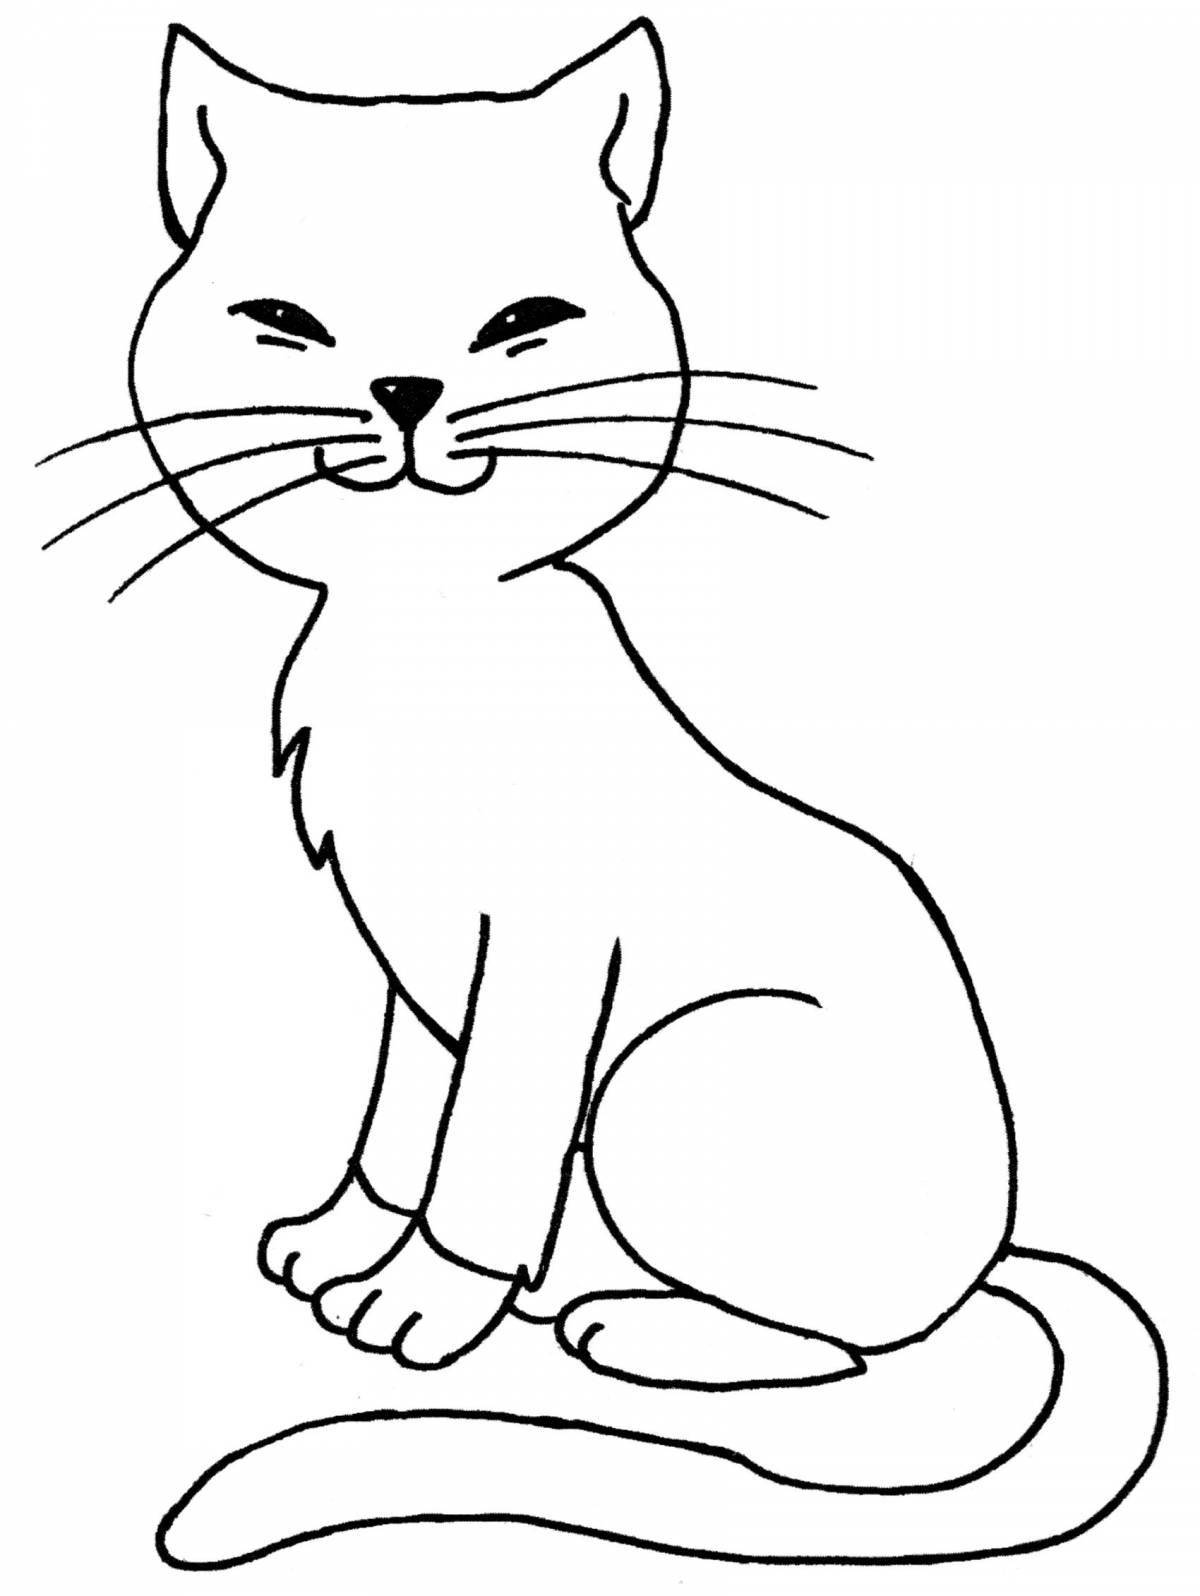 Великолепная раскраска рисунок кошки